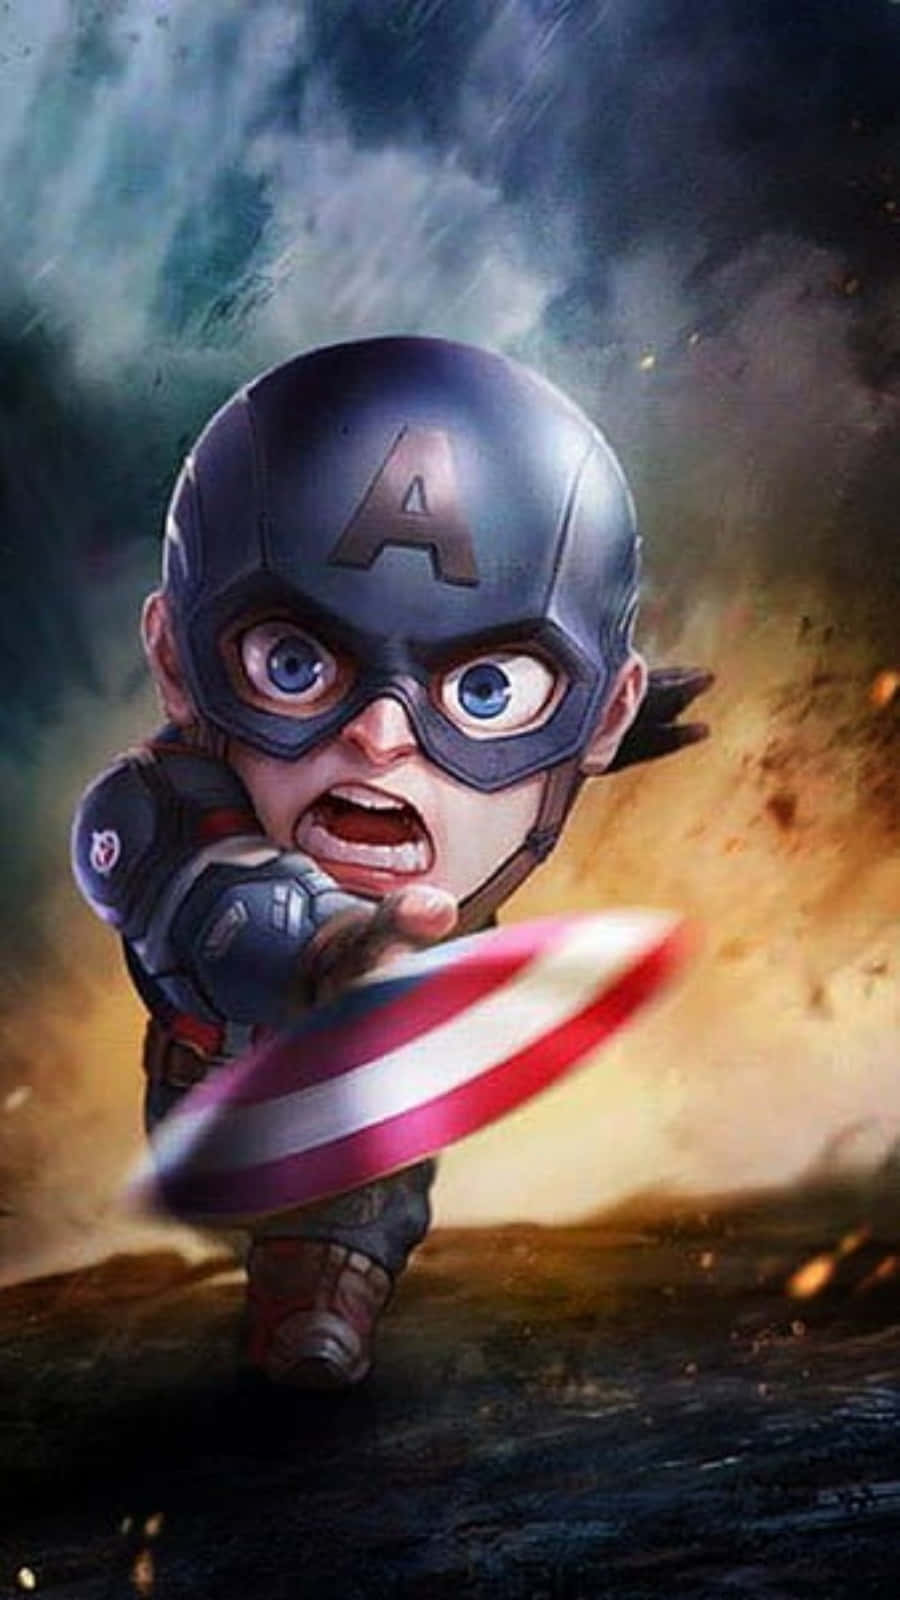 Witzigesmarvel Chibi Bild Von Captain America, Der Seinen Schild Wirft.